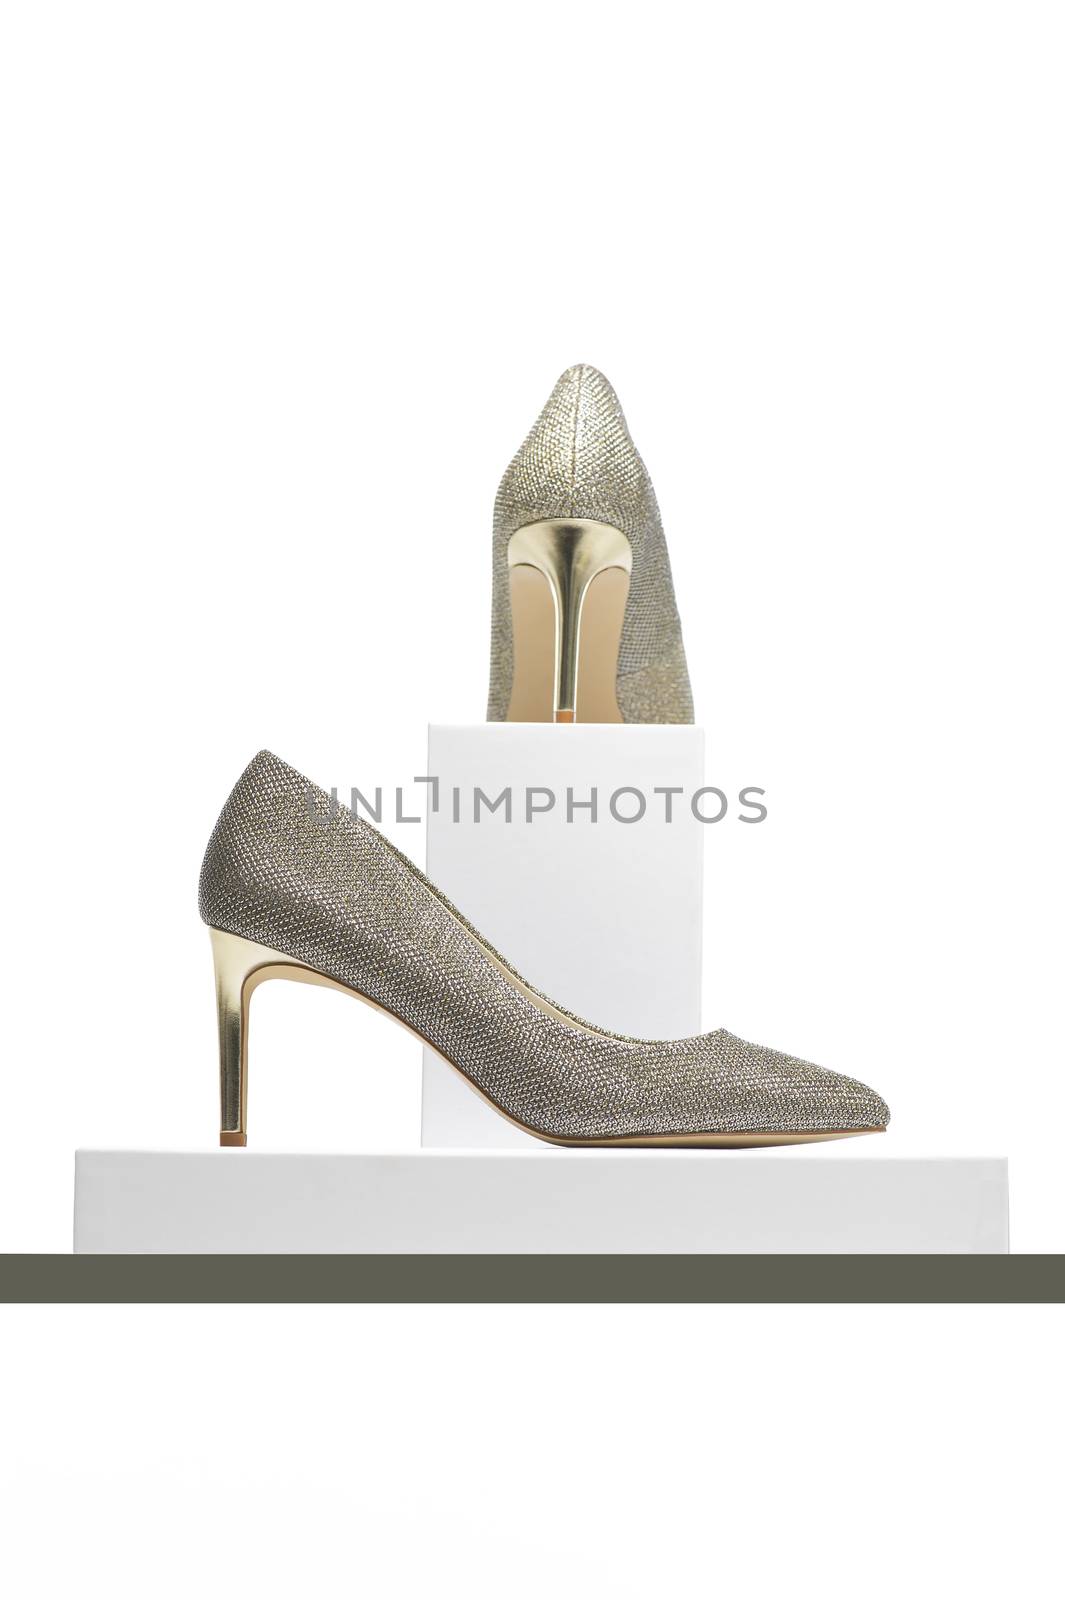 Elegant high heeled silver ladies shoes on display by MOELLERTHOMSEN